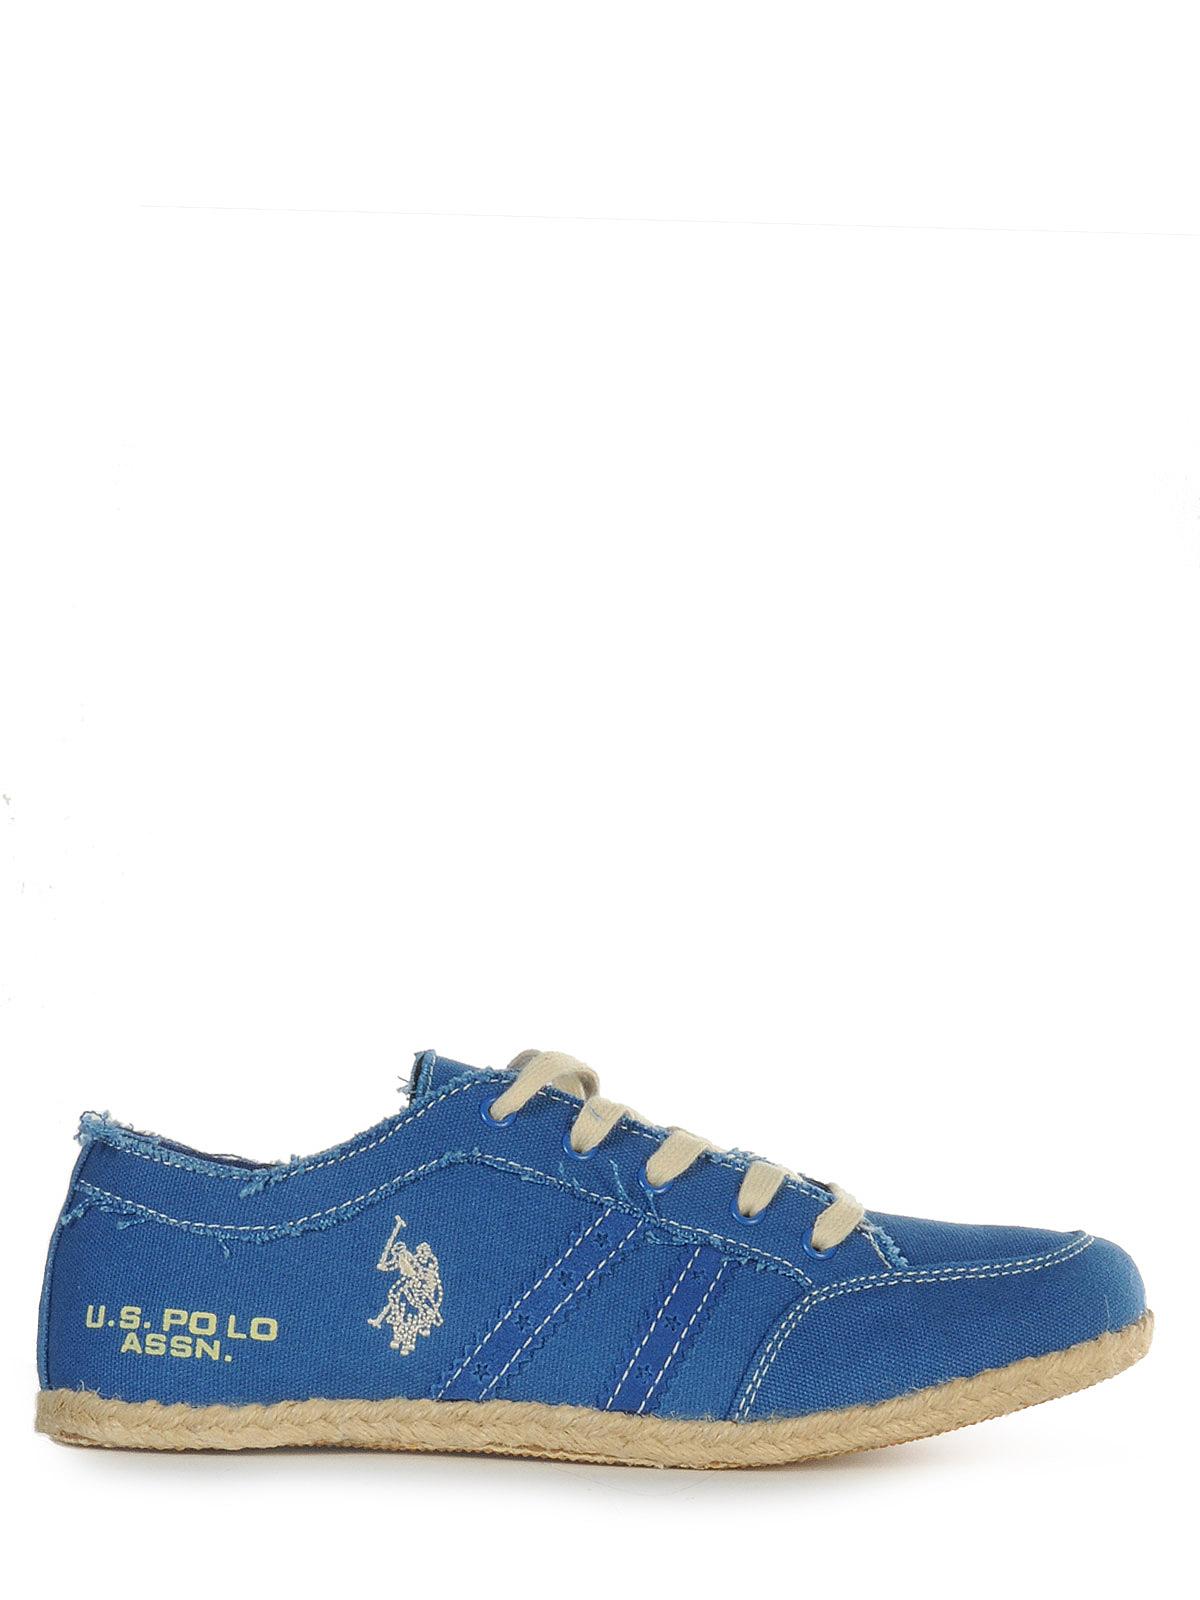 Foto U.S. Polo Assn. Zapatillas azul EU: 41